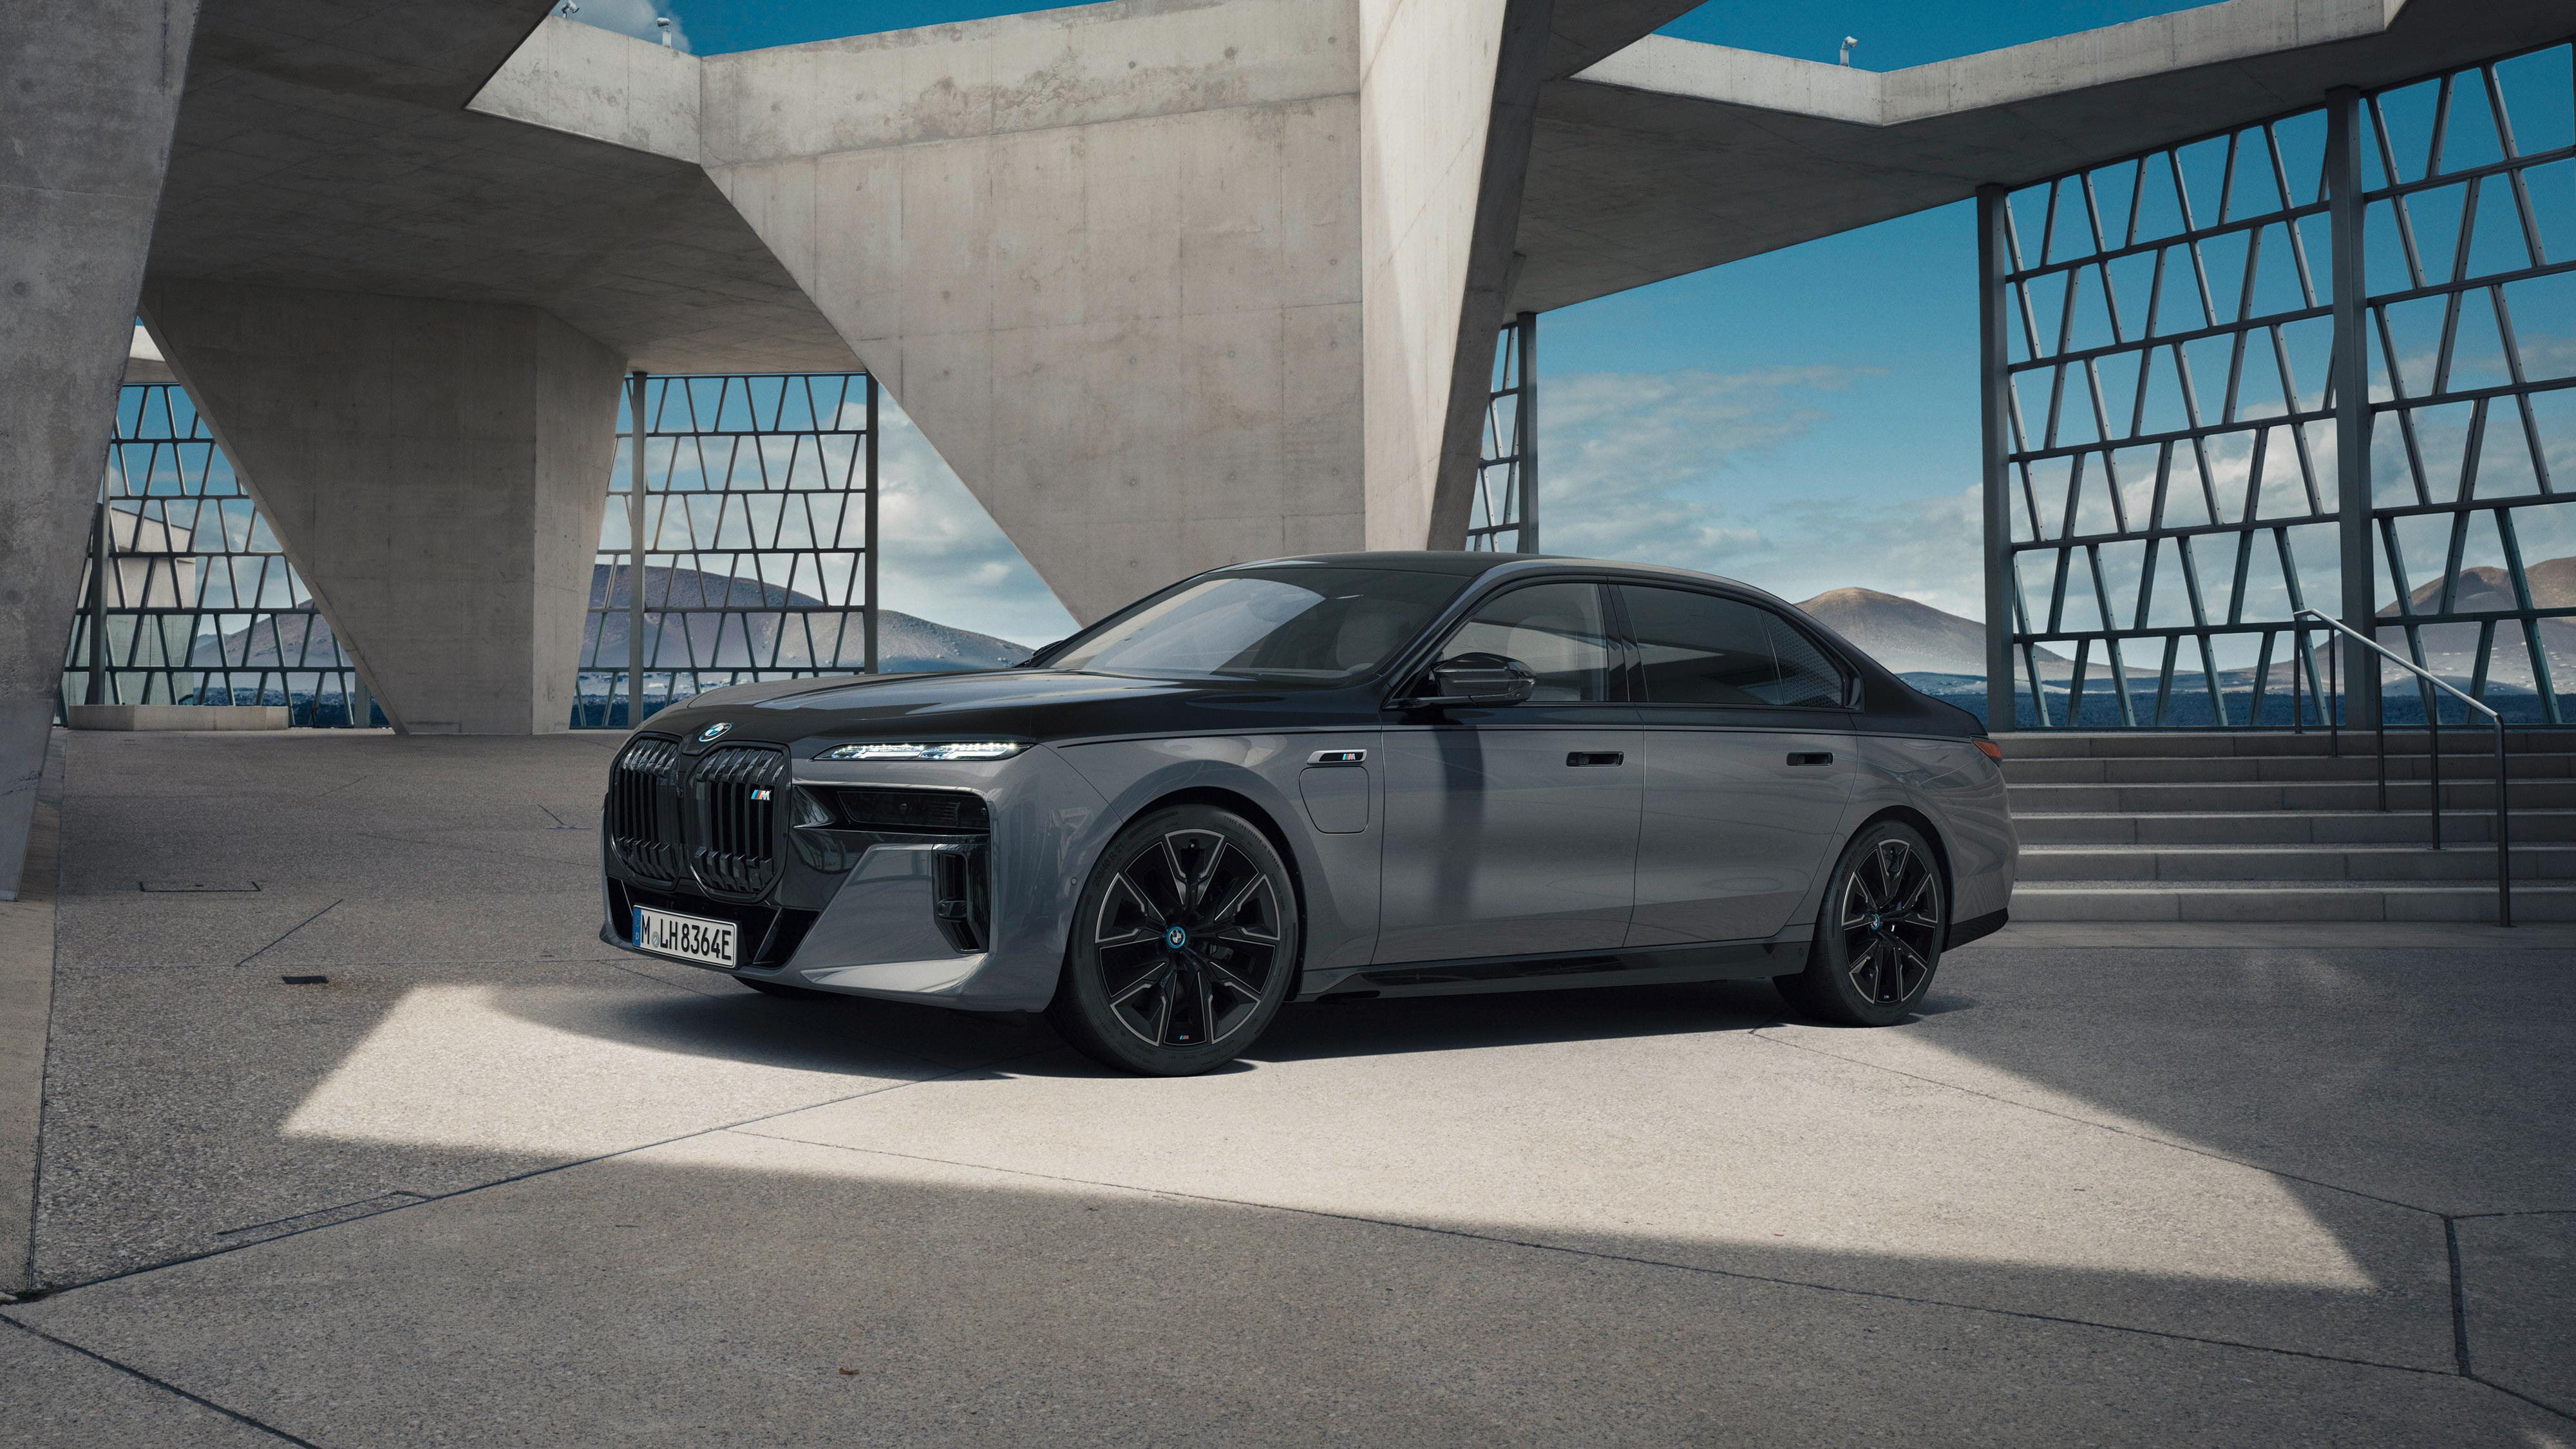 BMWs nye 7-serie kommer for første gang i helelektrisk versjon. Den ser ut til å bli en direktørbil av dimensjoner. 